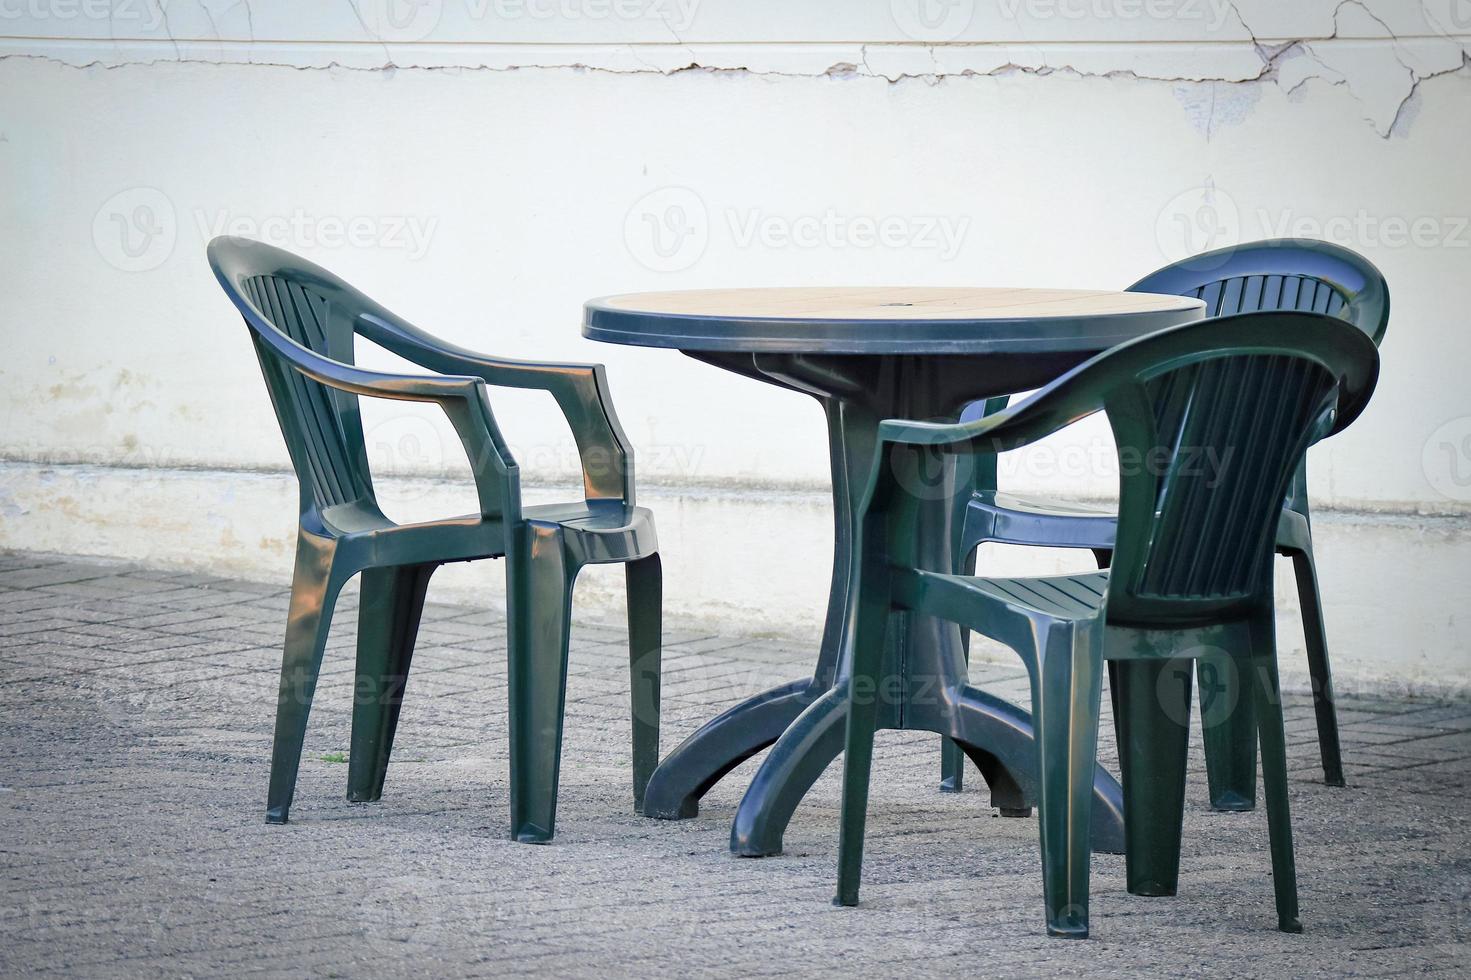 uppsättning av Balck trädgård möbel stolar och tabell på asfalterad gård mala utomhus foto